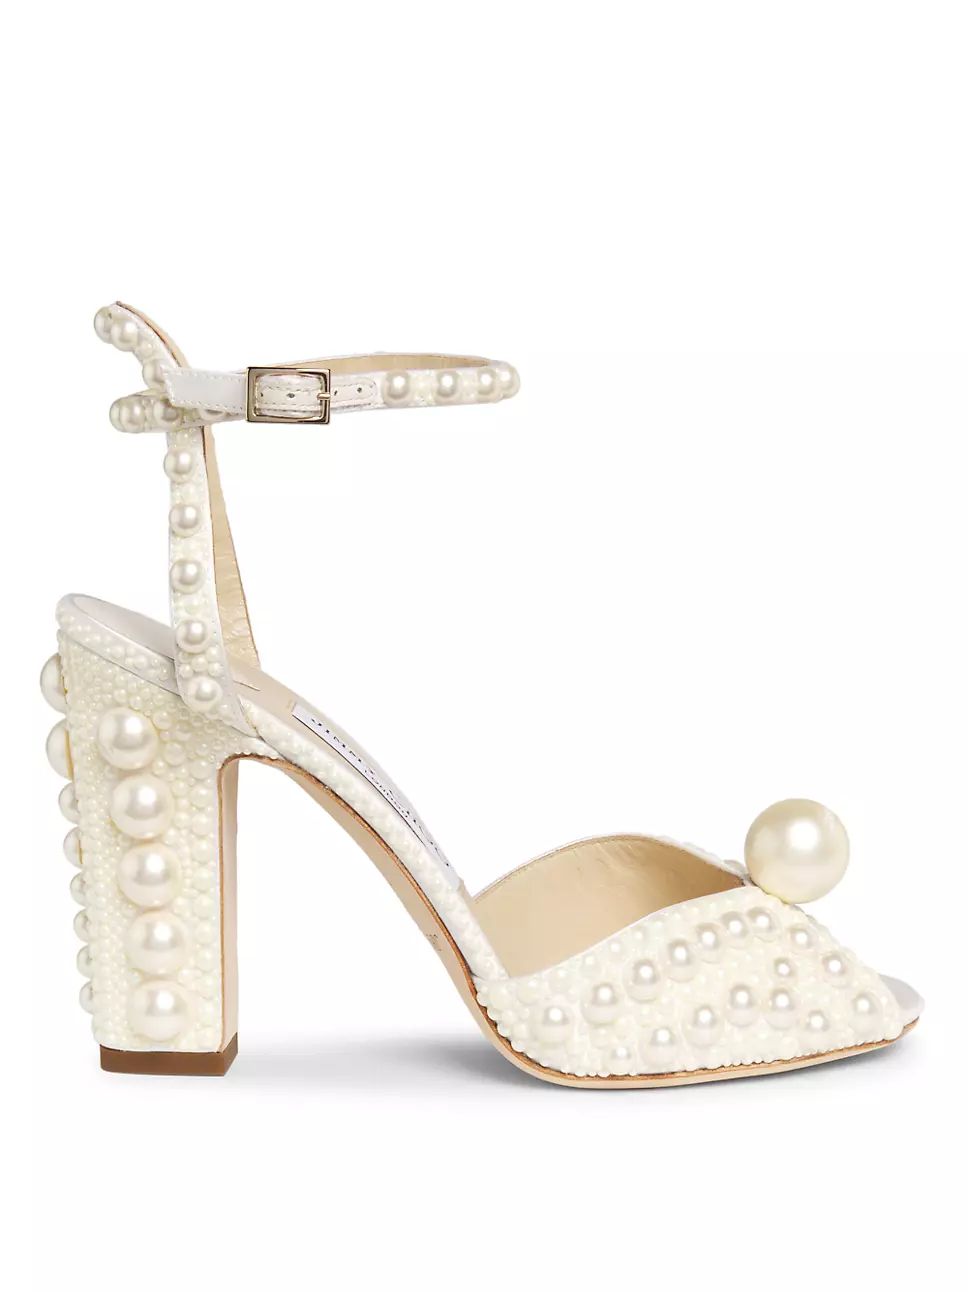 Sacora 100MM Embellished Sandals | Saks Fifth Avenue